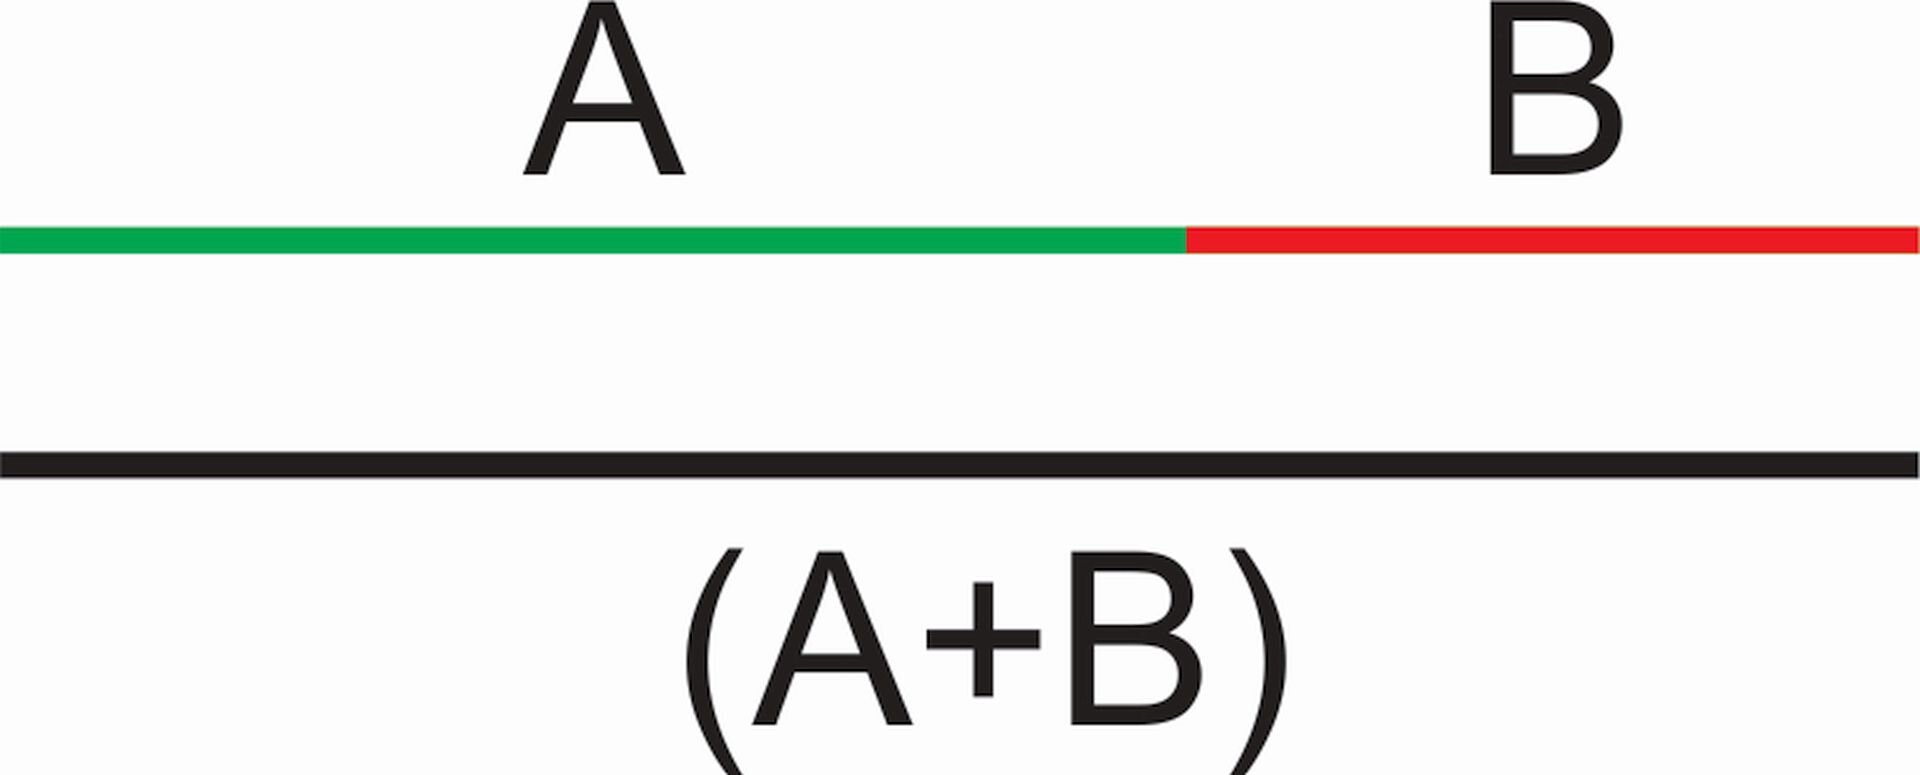 Ilustracja przedstawia "Złoty podział". Ukazuje podział odcinka na dwie części: dłuższą, zieloną, oznaczoną literą A i krótszą szerzoną, oznaczoną literą B. Pod spodem znajduje się połączenie tych wartości - odcinek w kolorze czarnym, oznaczony jako (A+B).